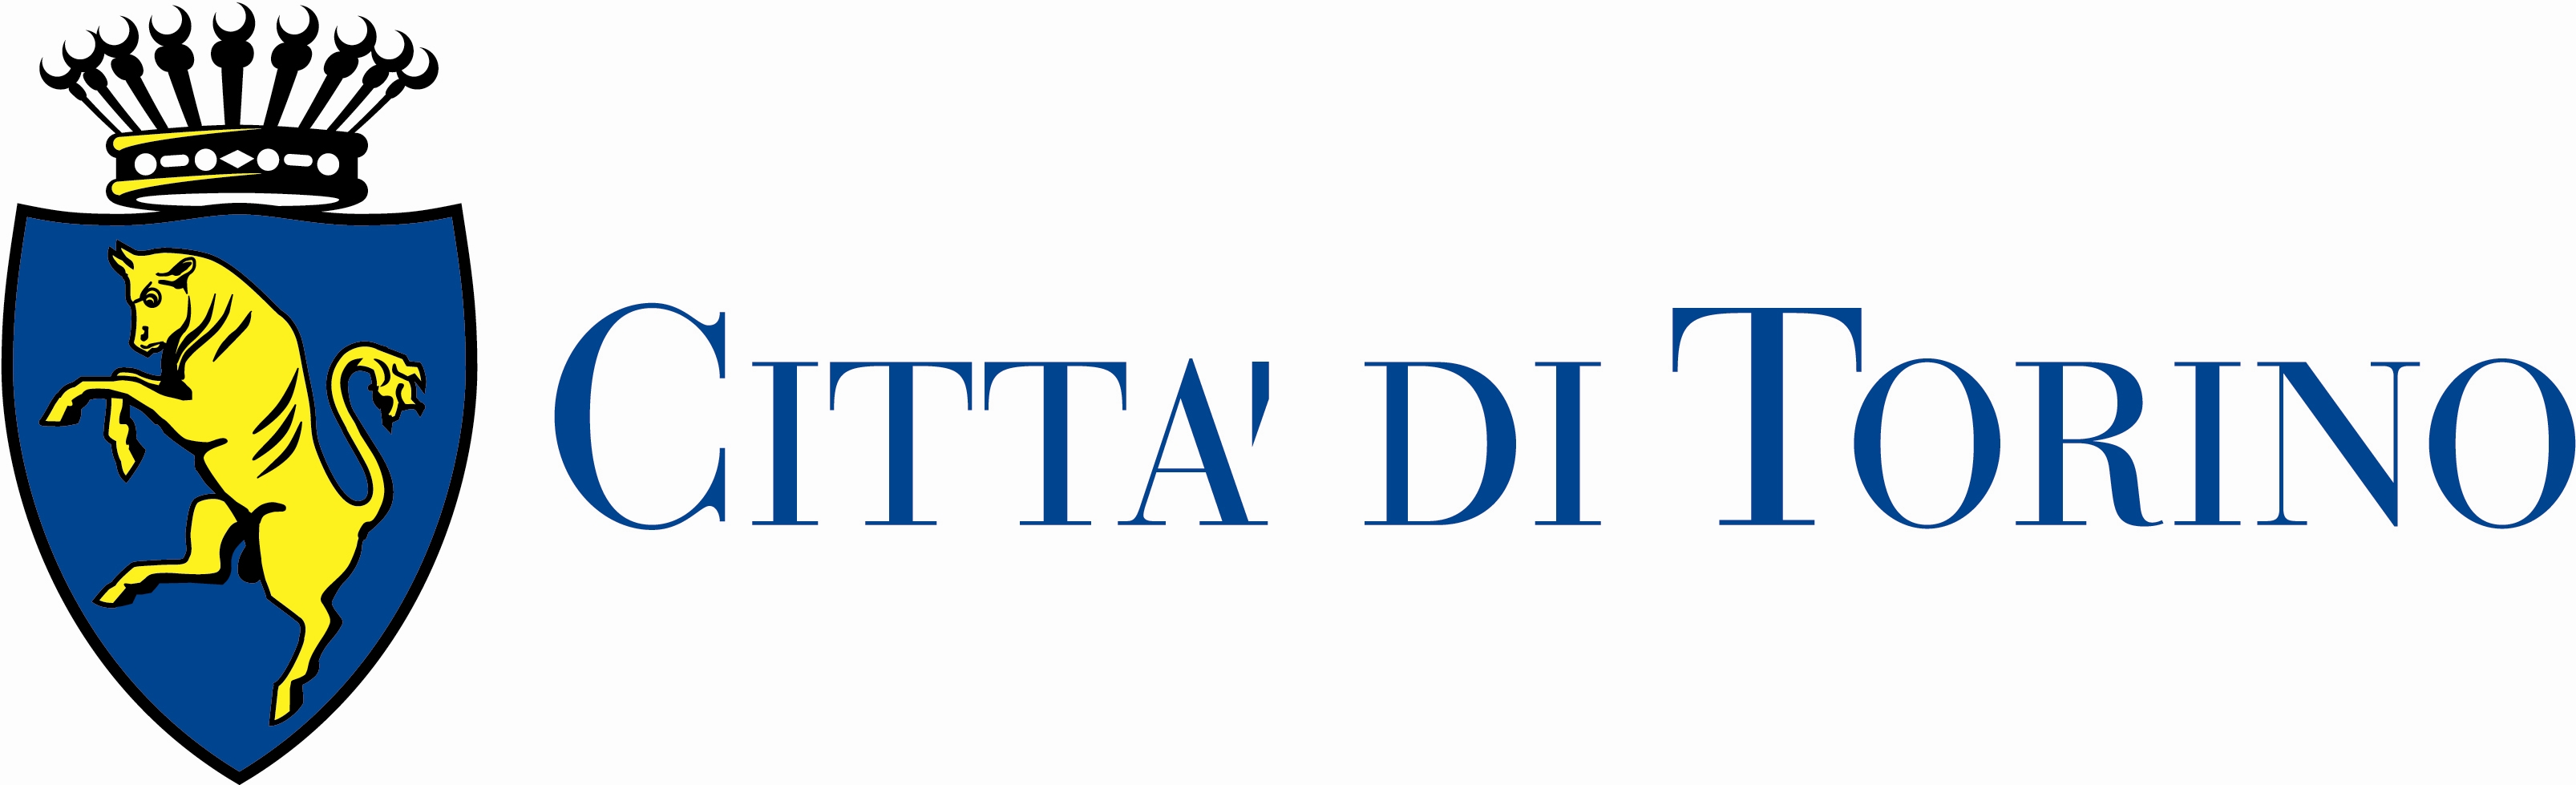 Logo Città di Torino sbandierato